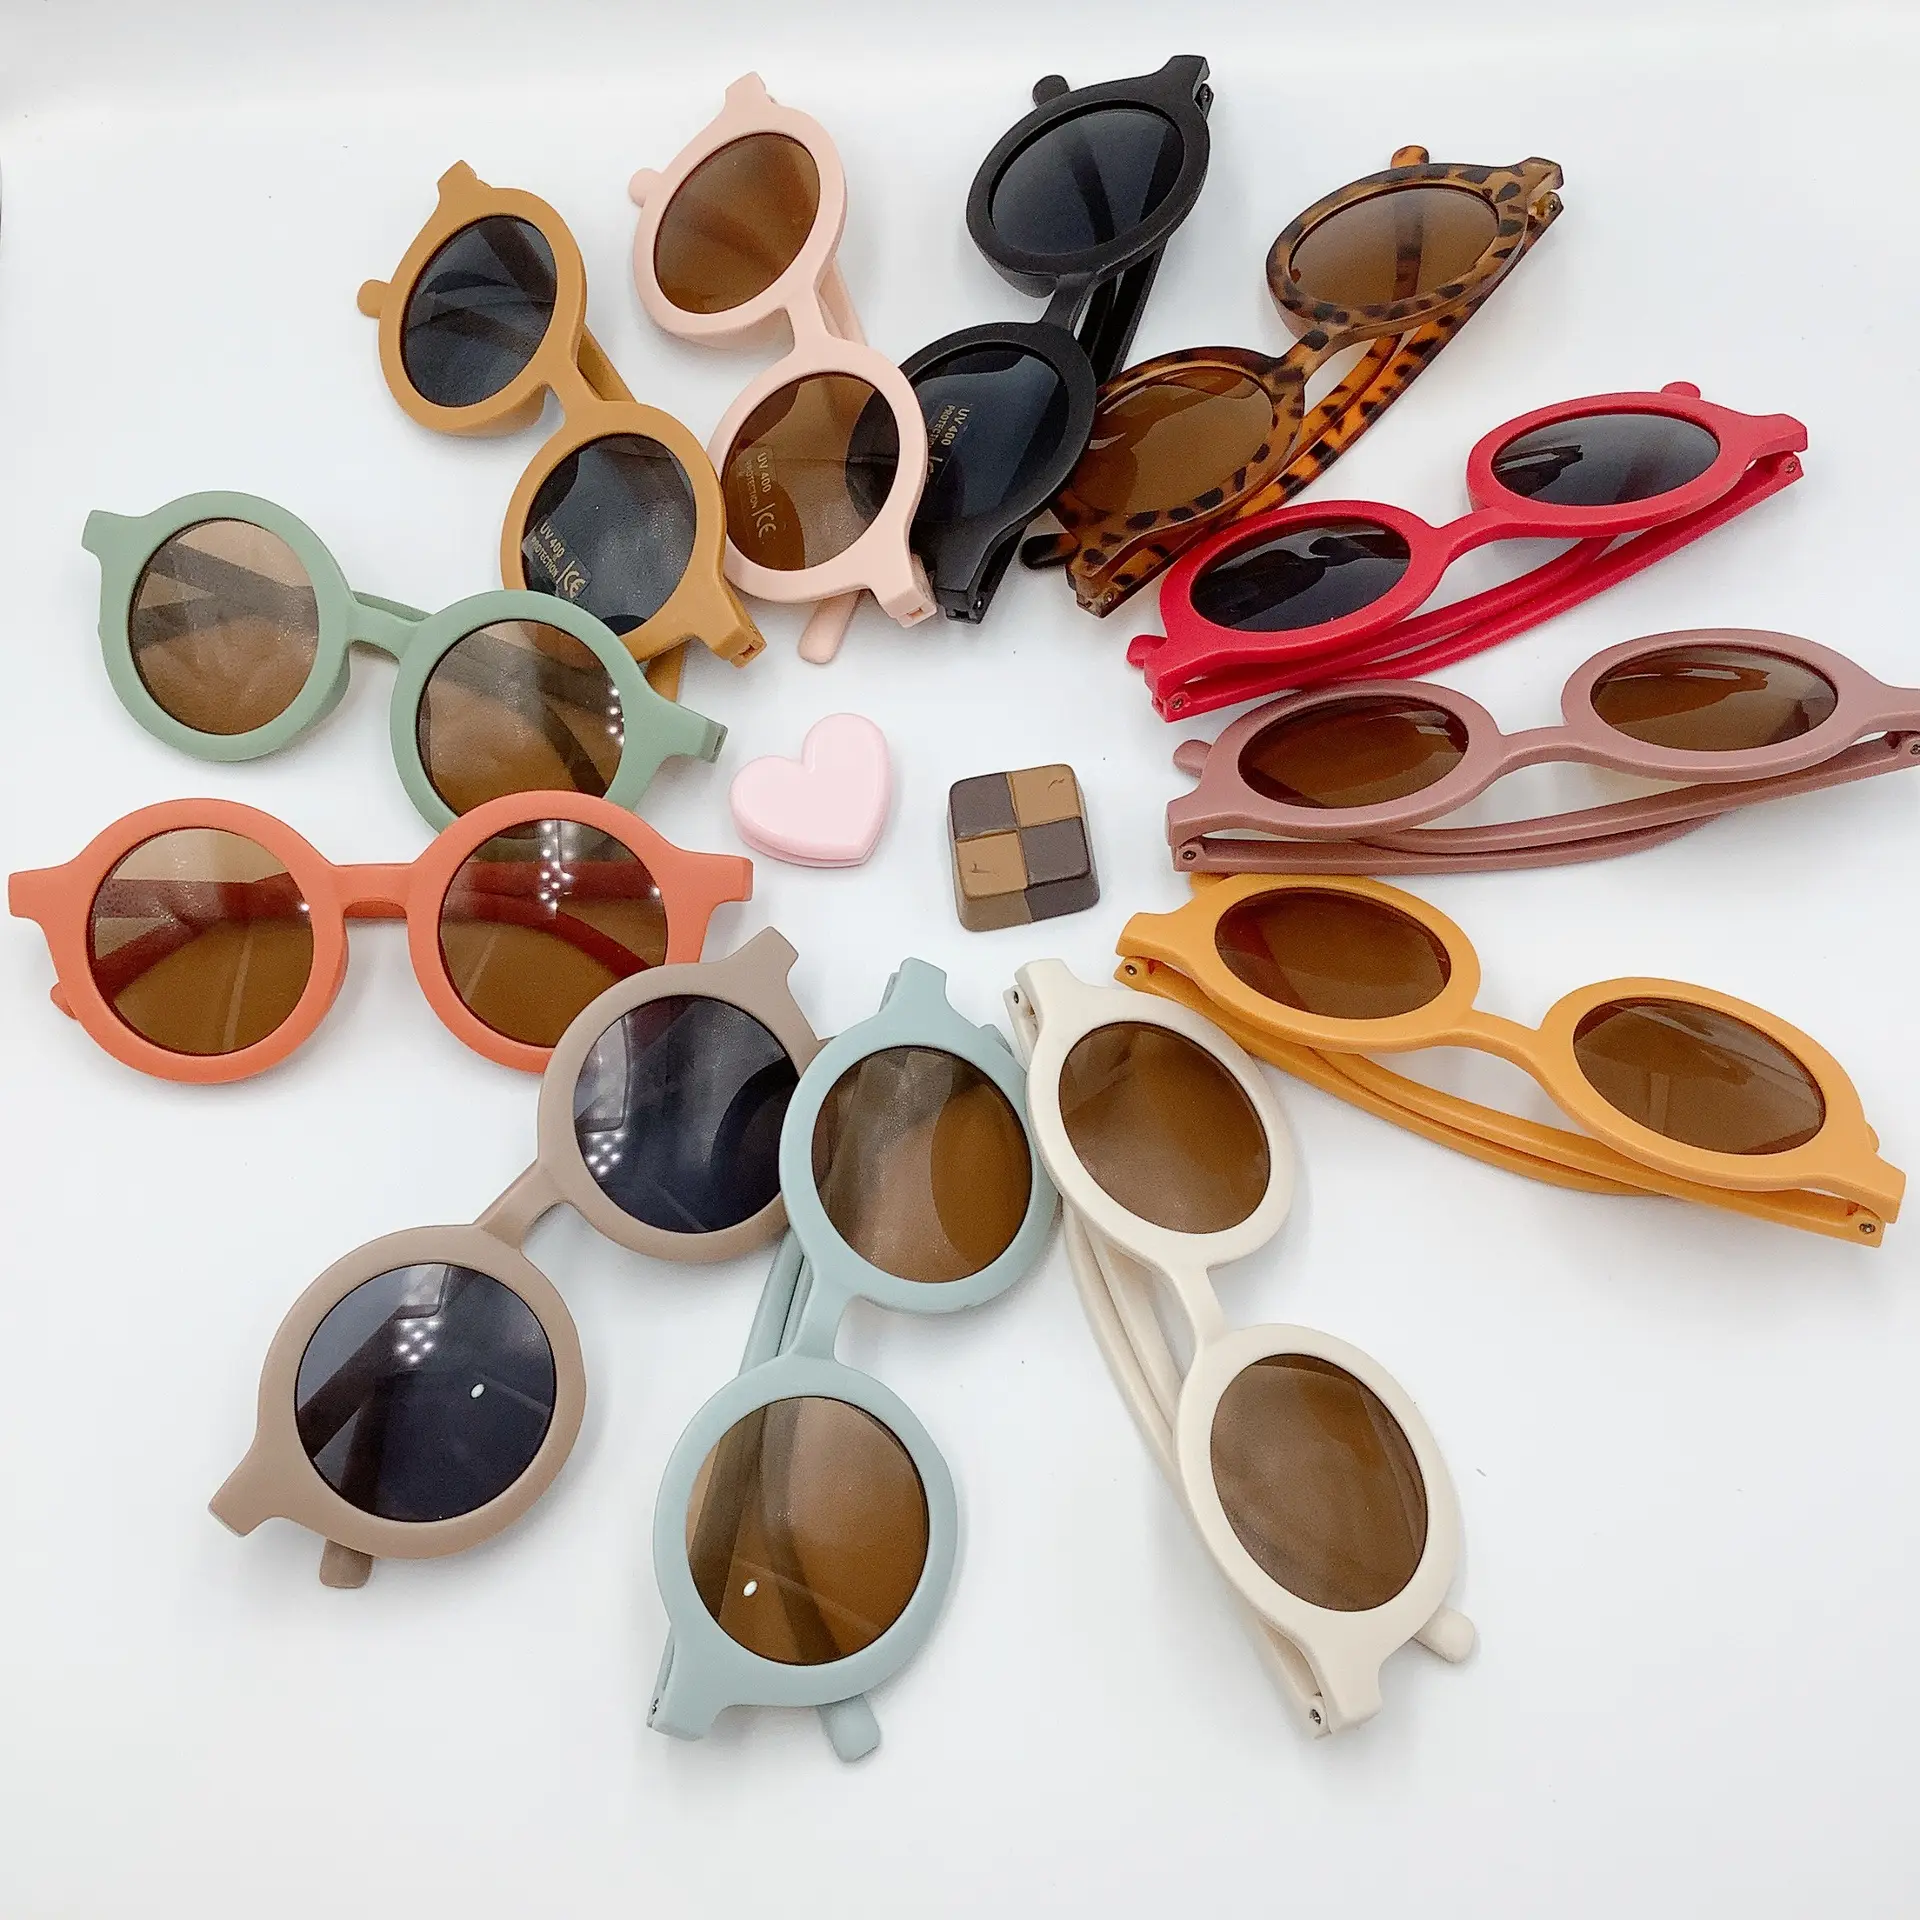 نظارات شمس عصرية للأطفال بثمن زهيد ومُخصصة للبيع بالجملة وبثمن زهيد لعام 2023 نظارات شمس مستديرة بألوان زاهية